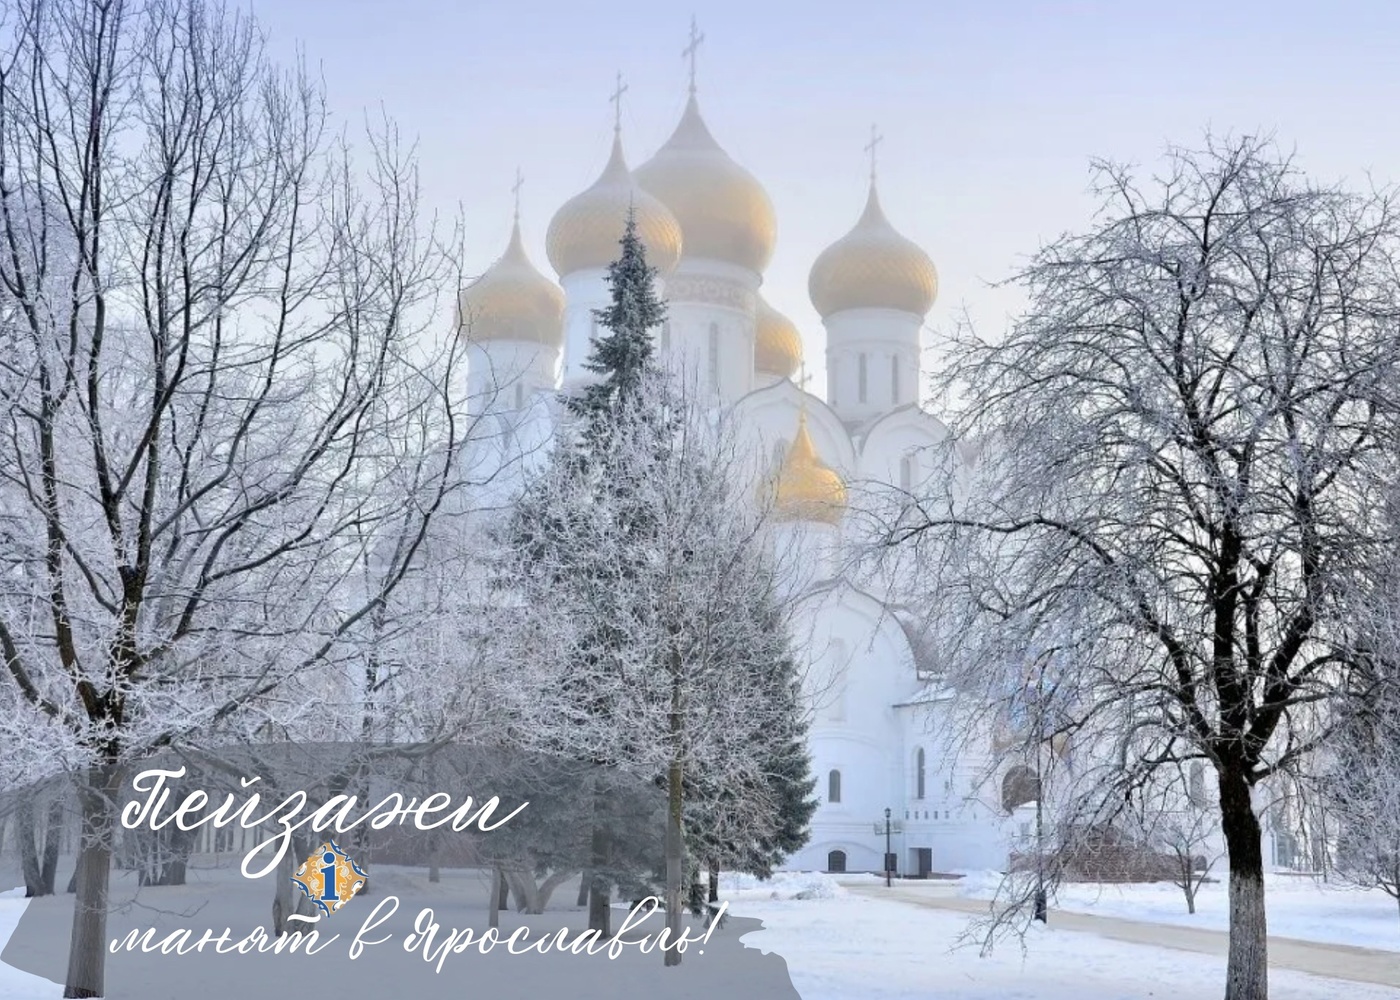 The beauty of winter Yaroslavl